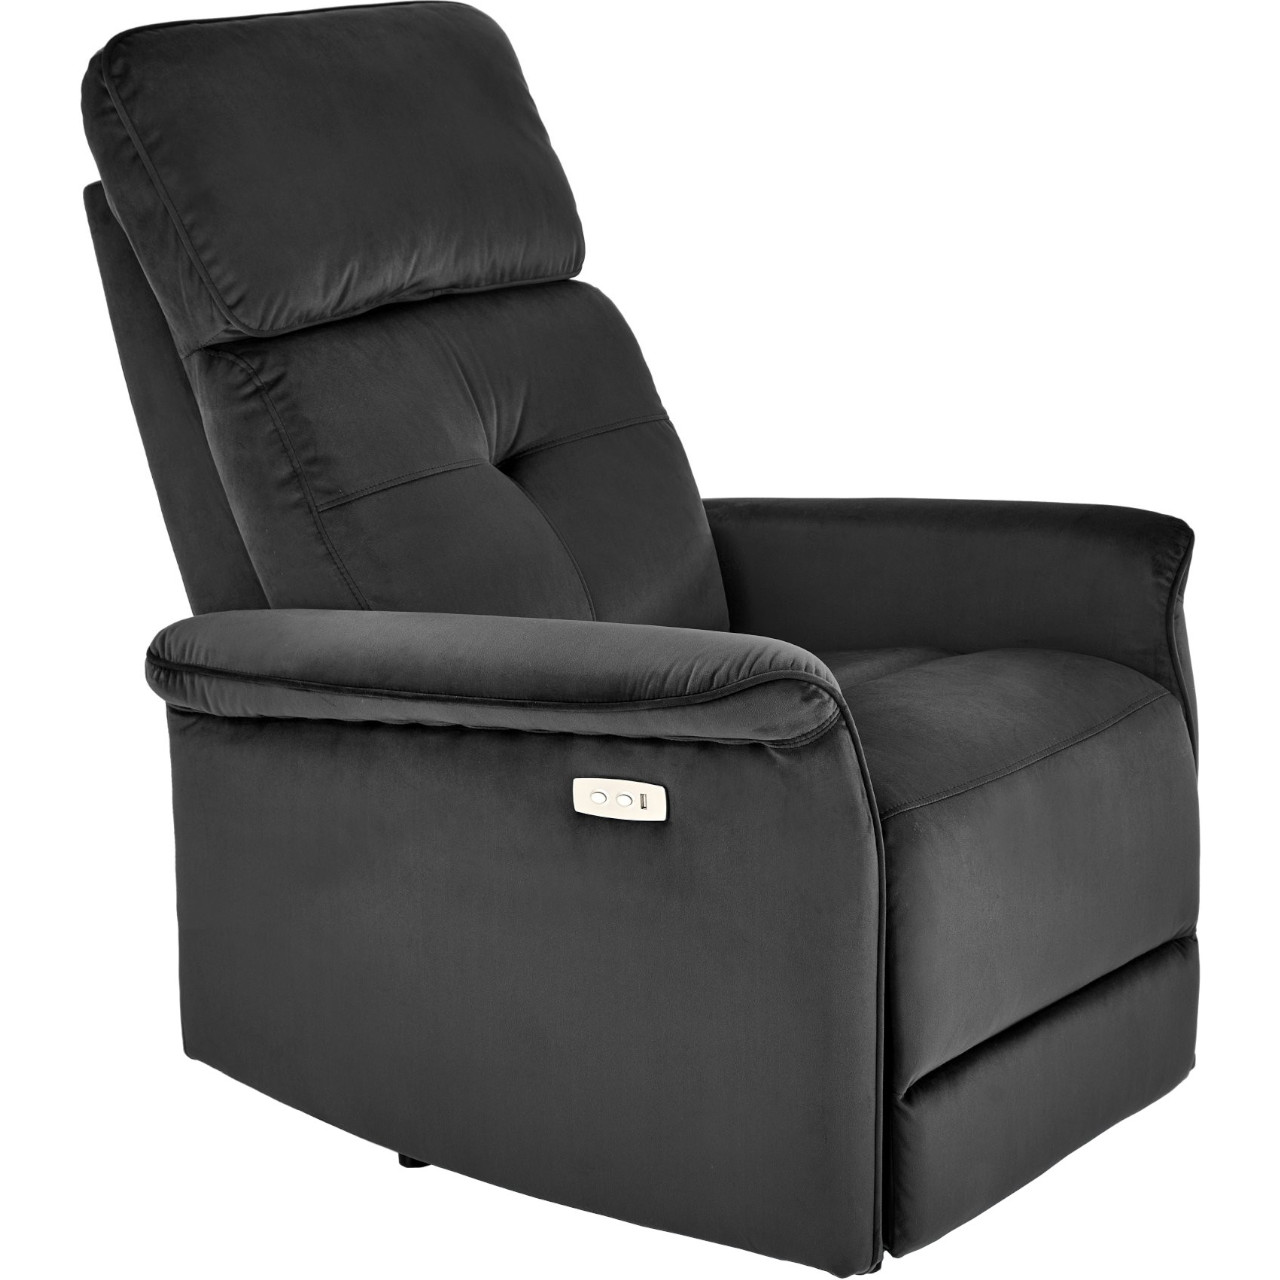 Recliner armchair SAFIR black